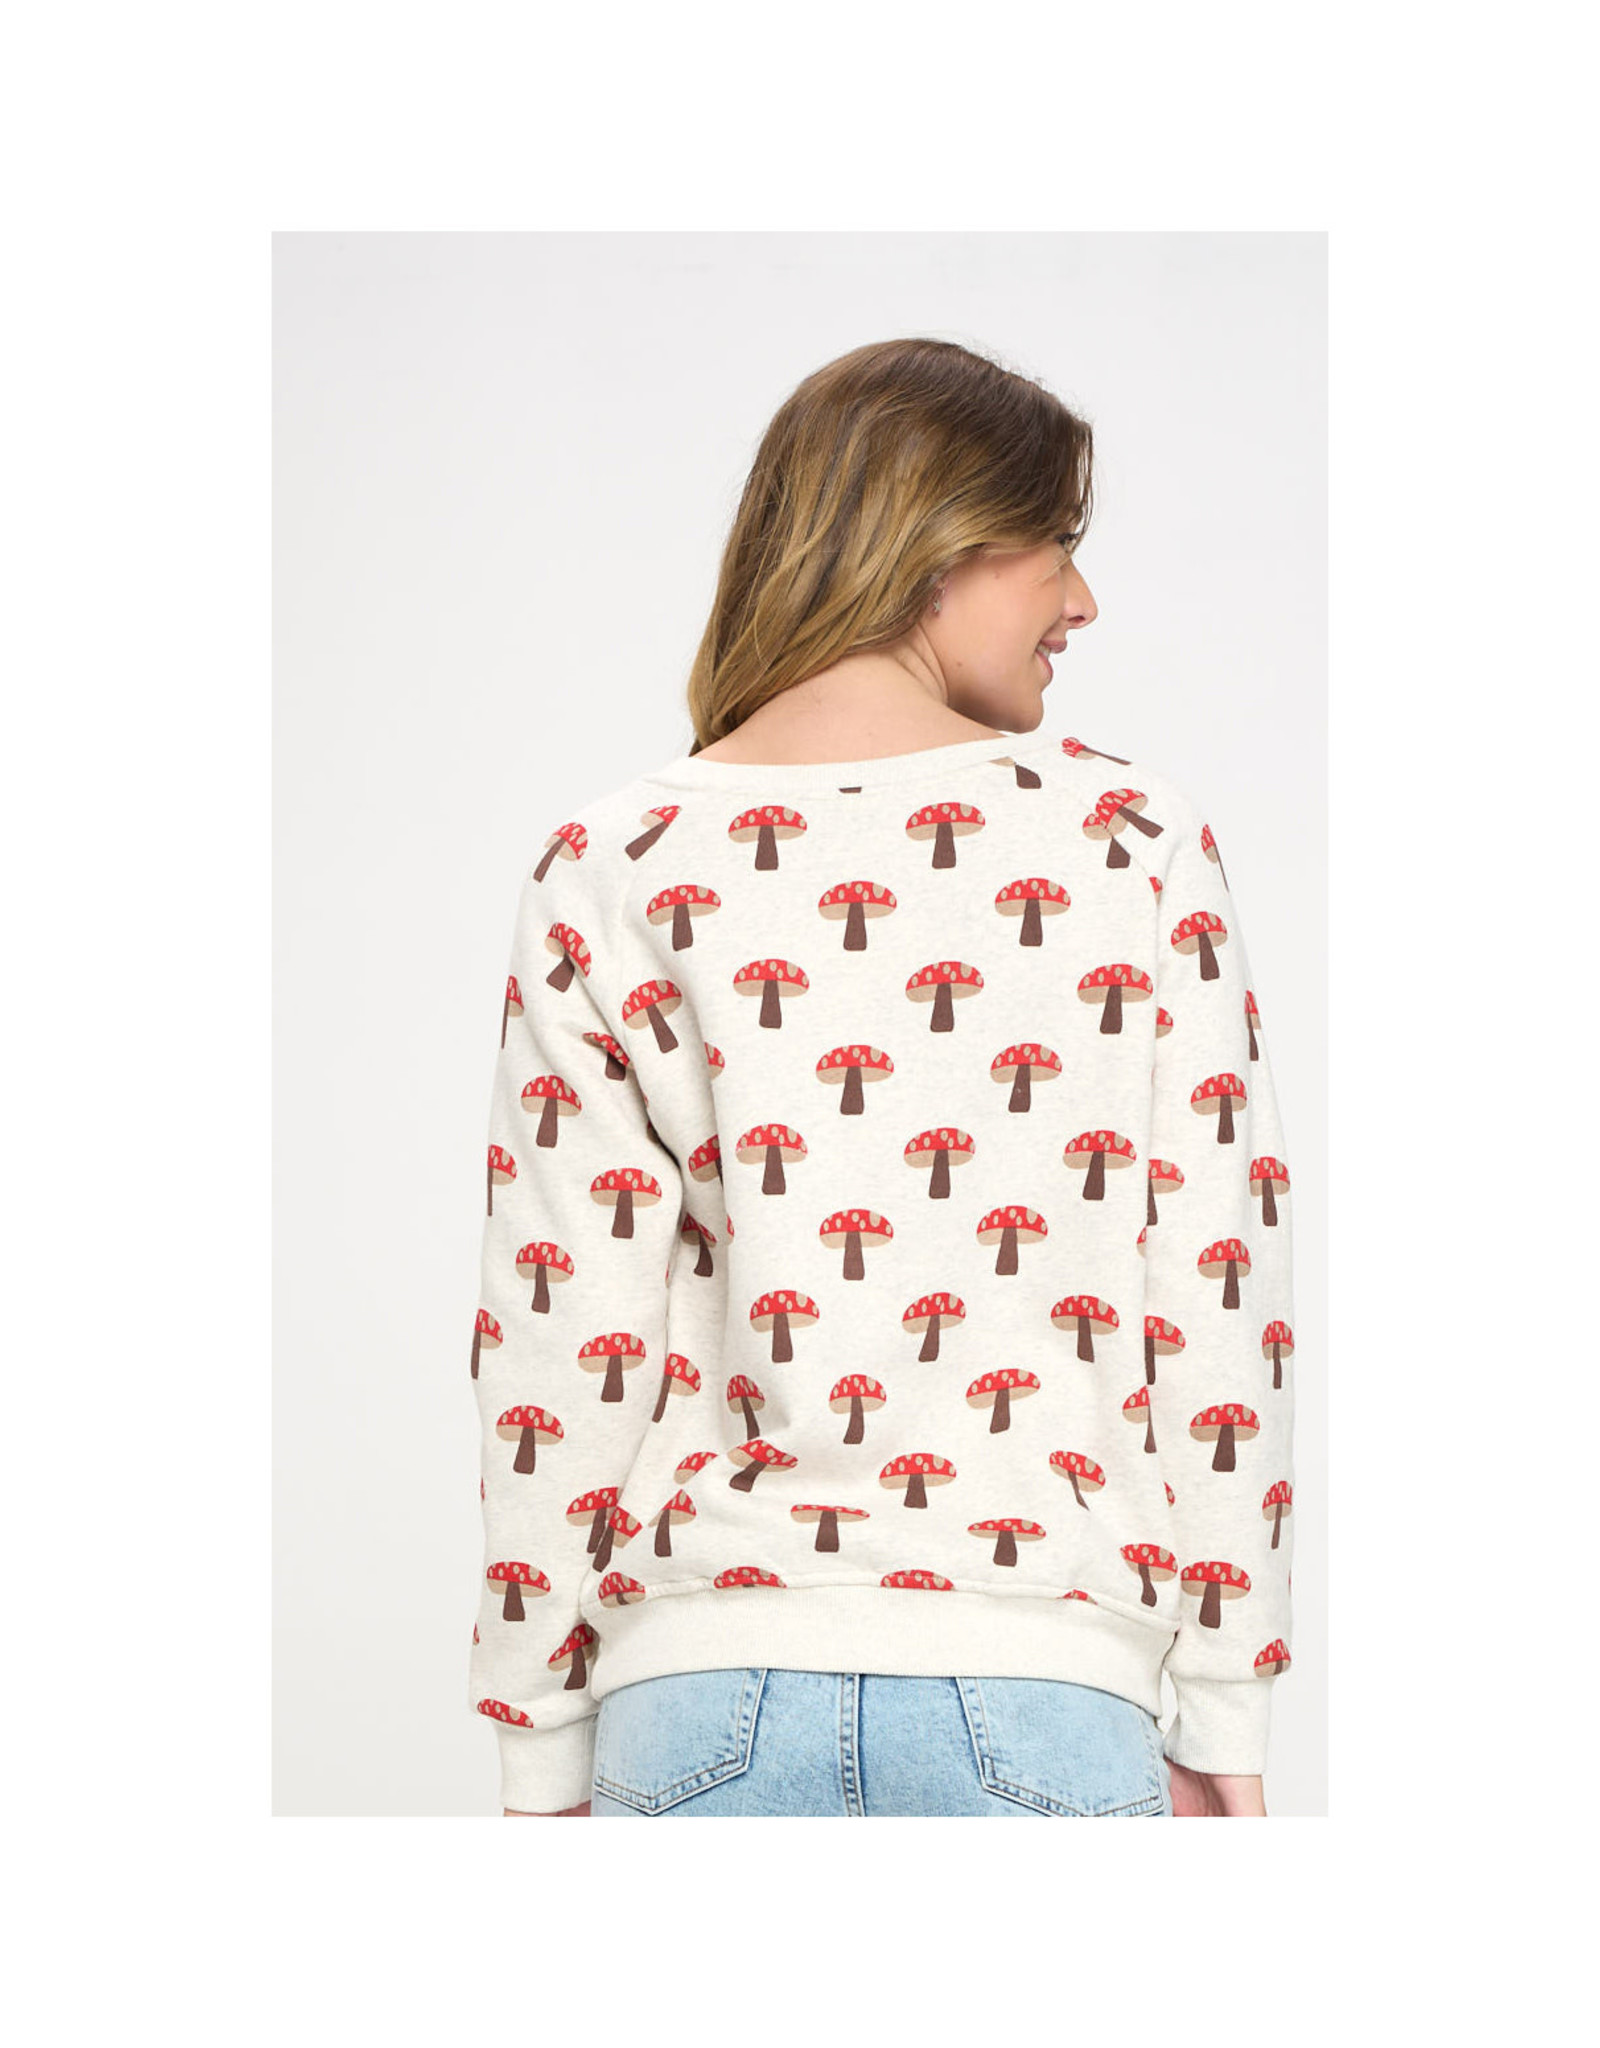 Cheery Red Mushrooms Sweatshirt